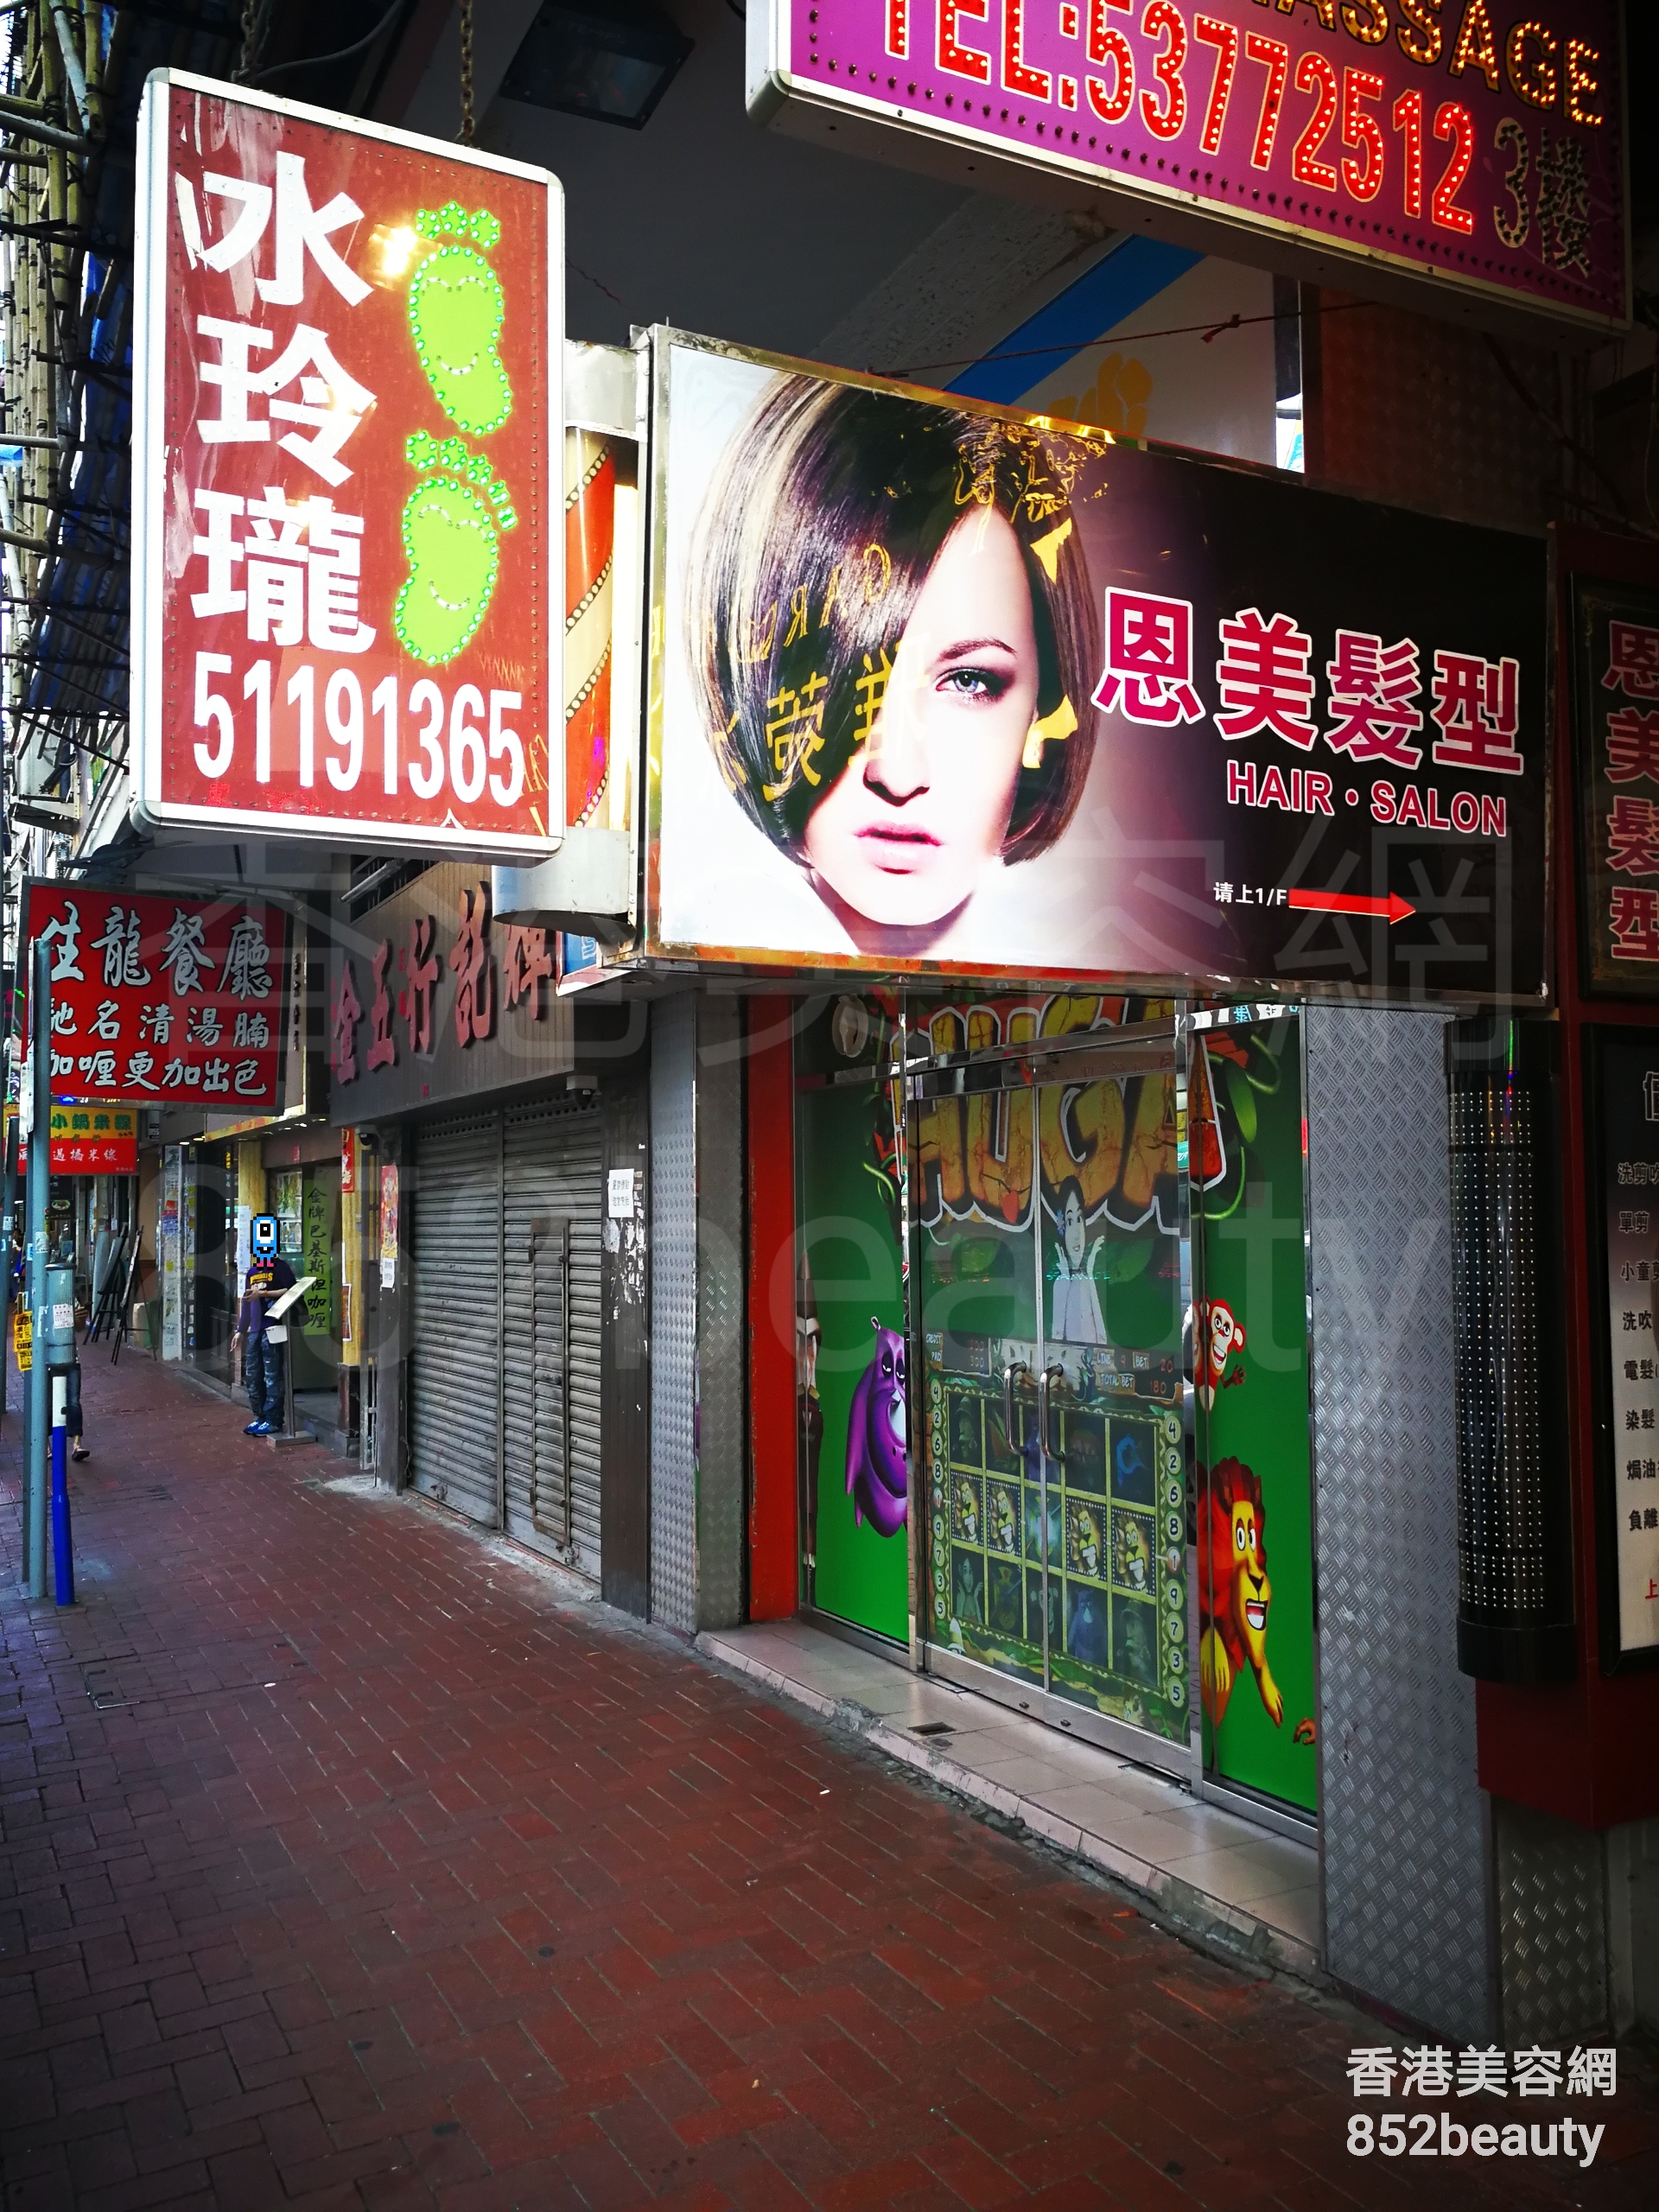 香港美容網 Hong Kong Beauty Salon 美容院 / 美容師: 水玲瓏